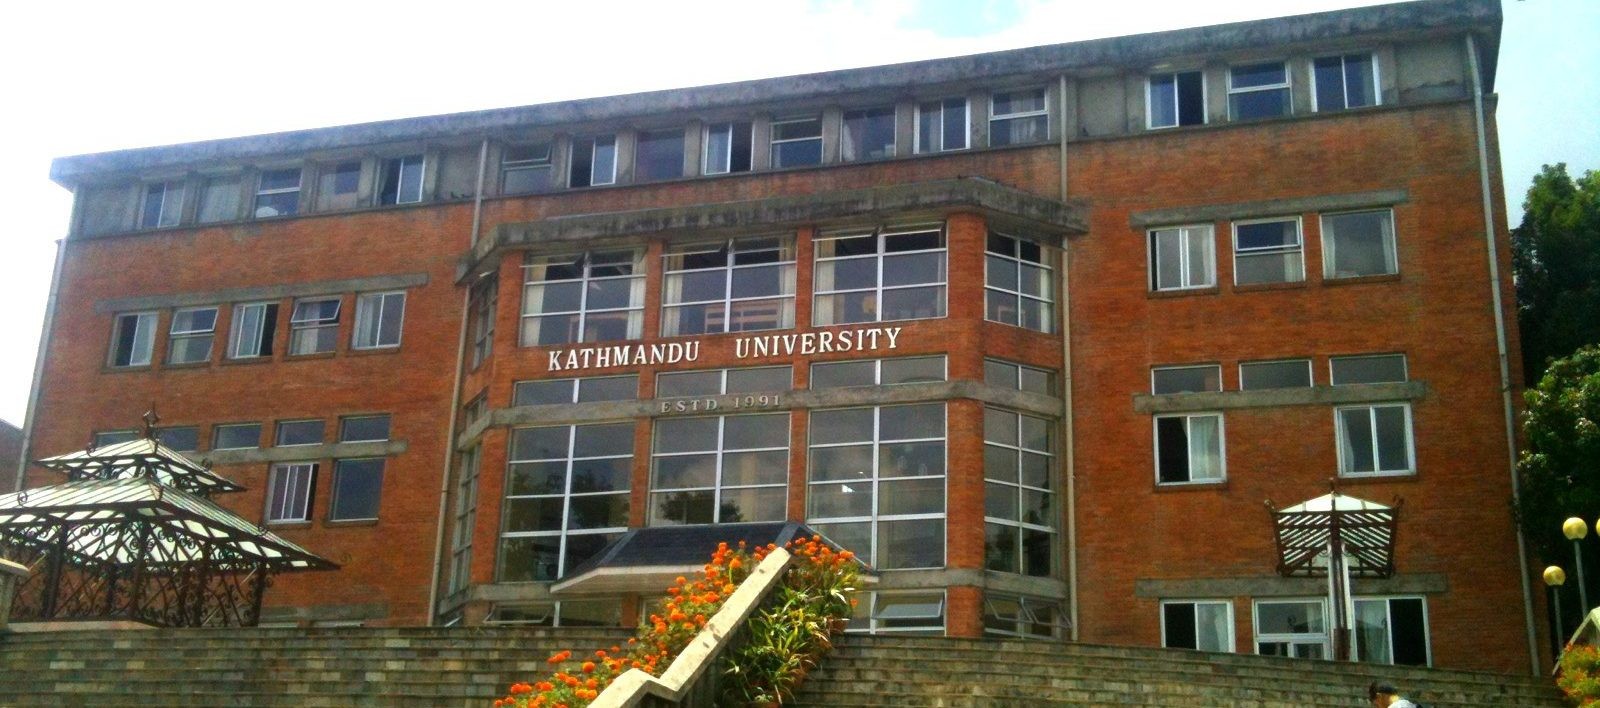 काठमाडौं विश्वविद्यालयका प्राध्यापकको आपत्ती उपकुलपति सिफारिसमा साँठगाँठ आशंका